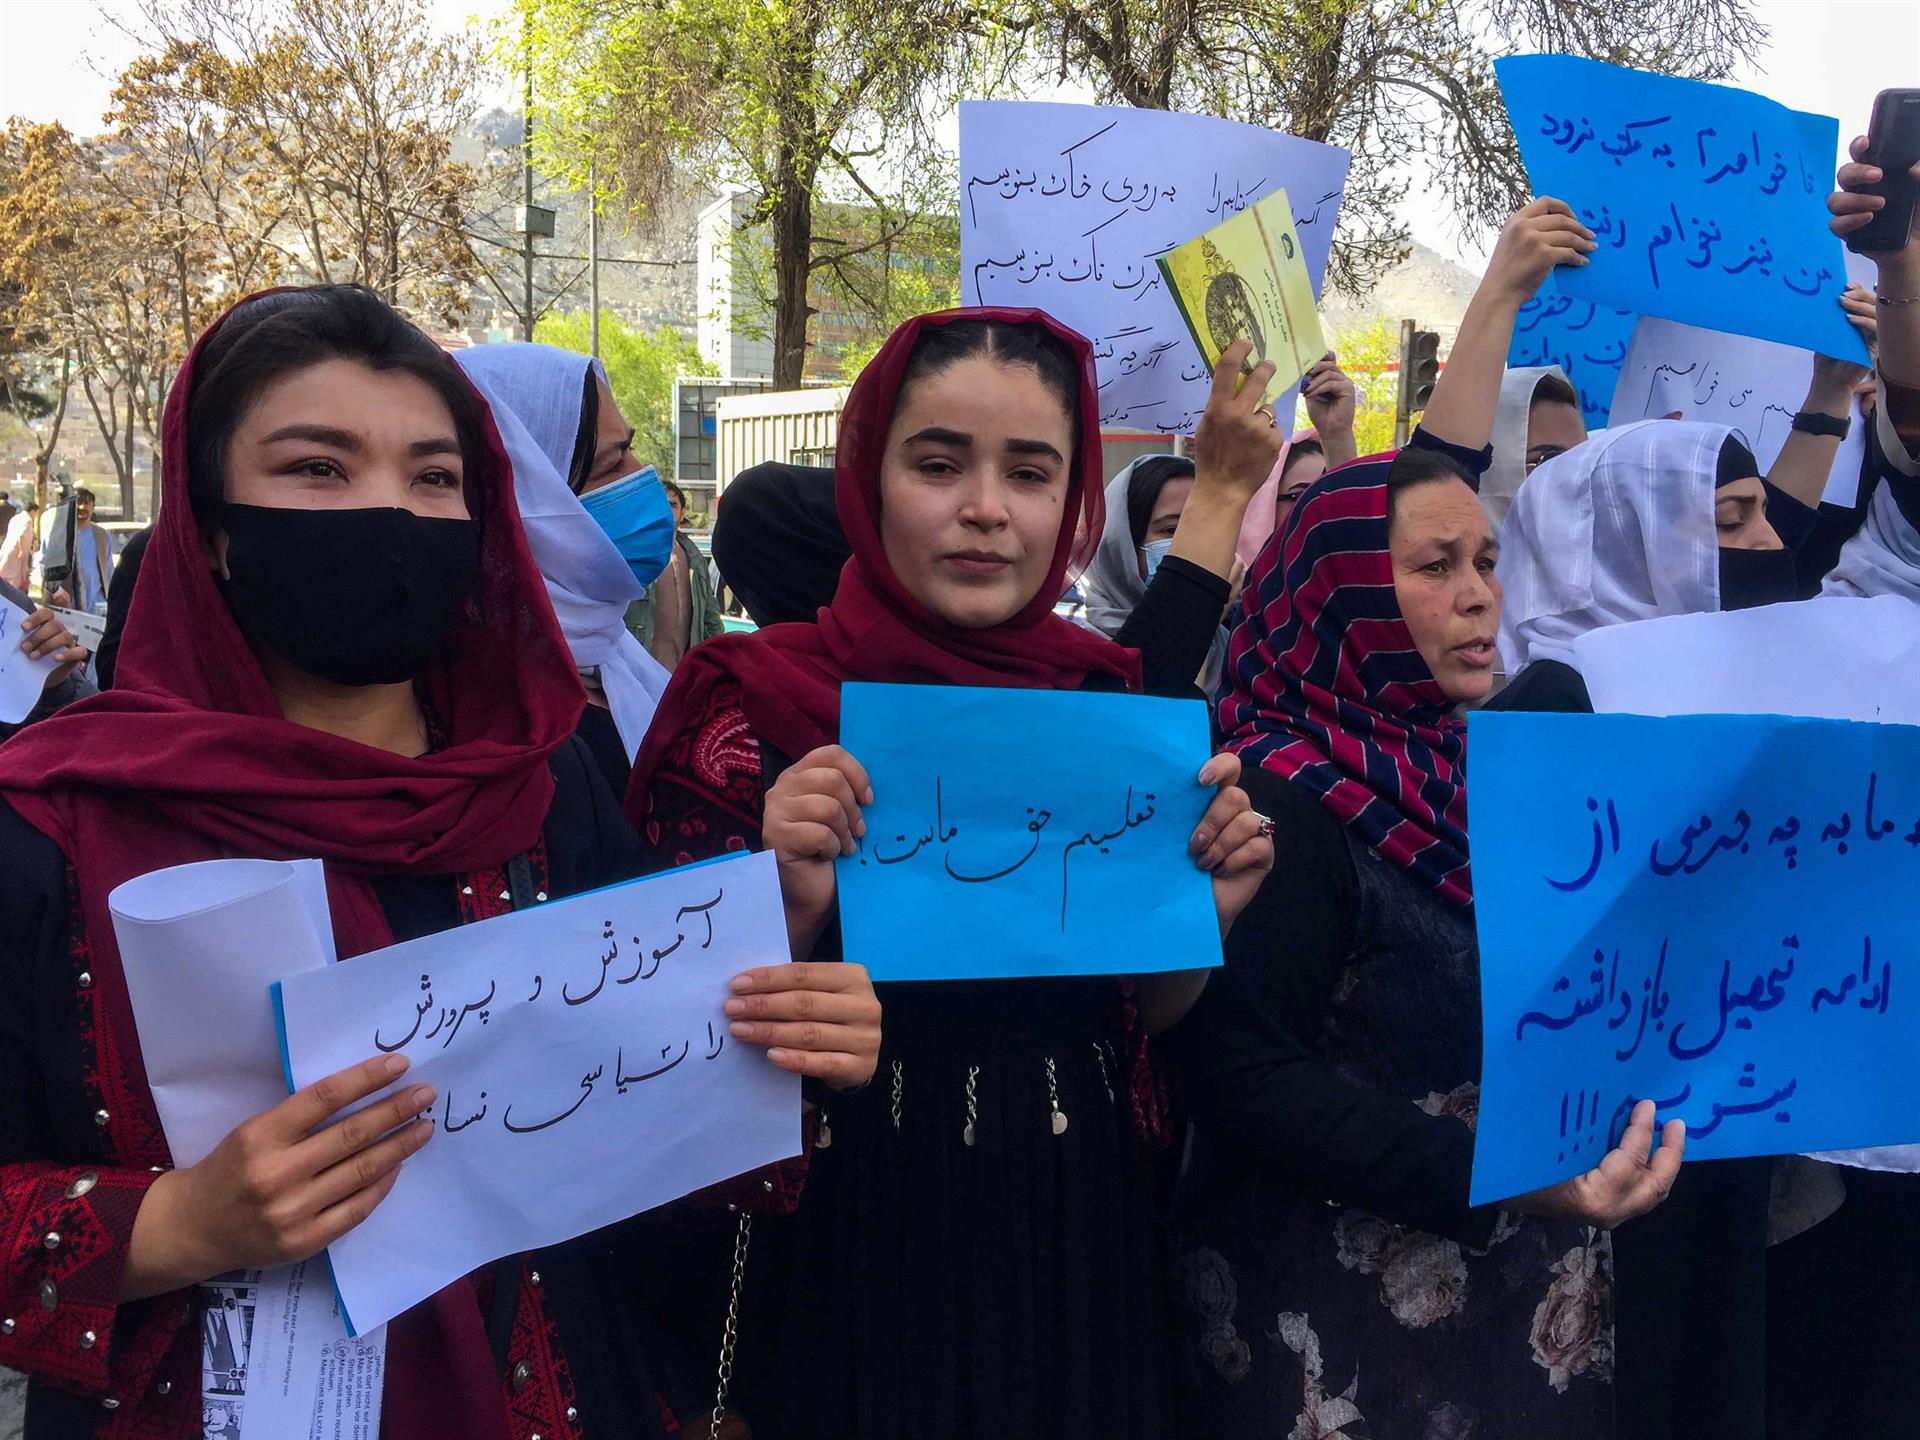 Docentes seguram cartazes durante um protesto no Afeganistão